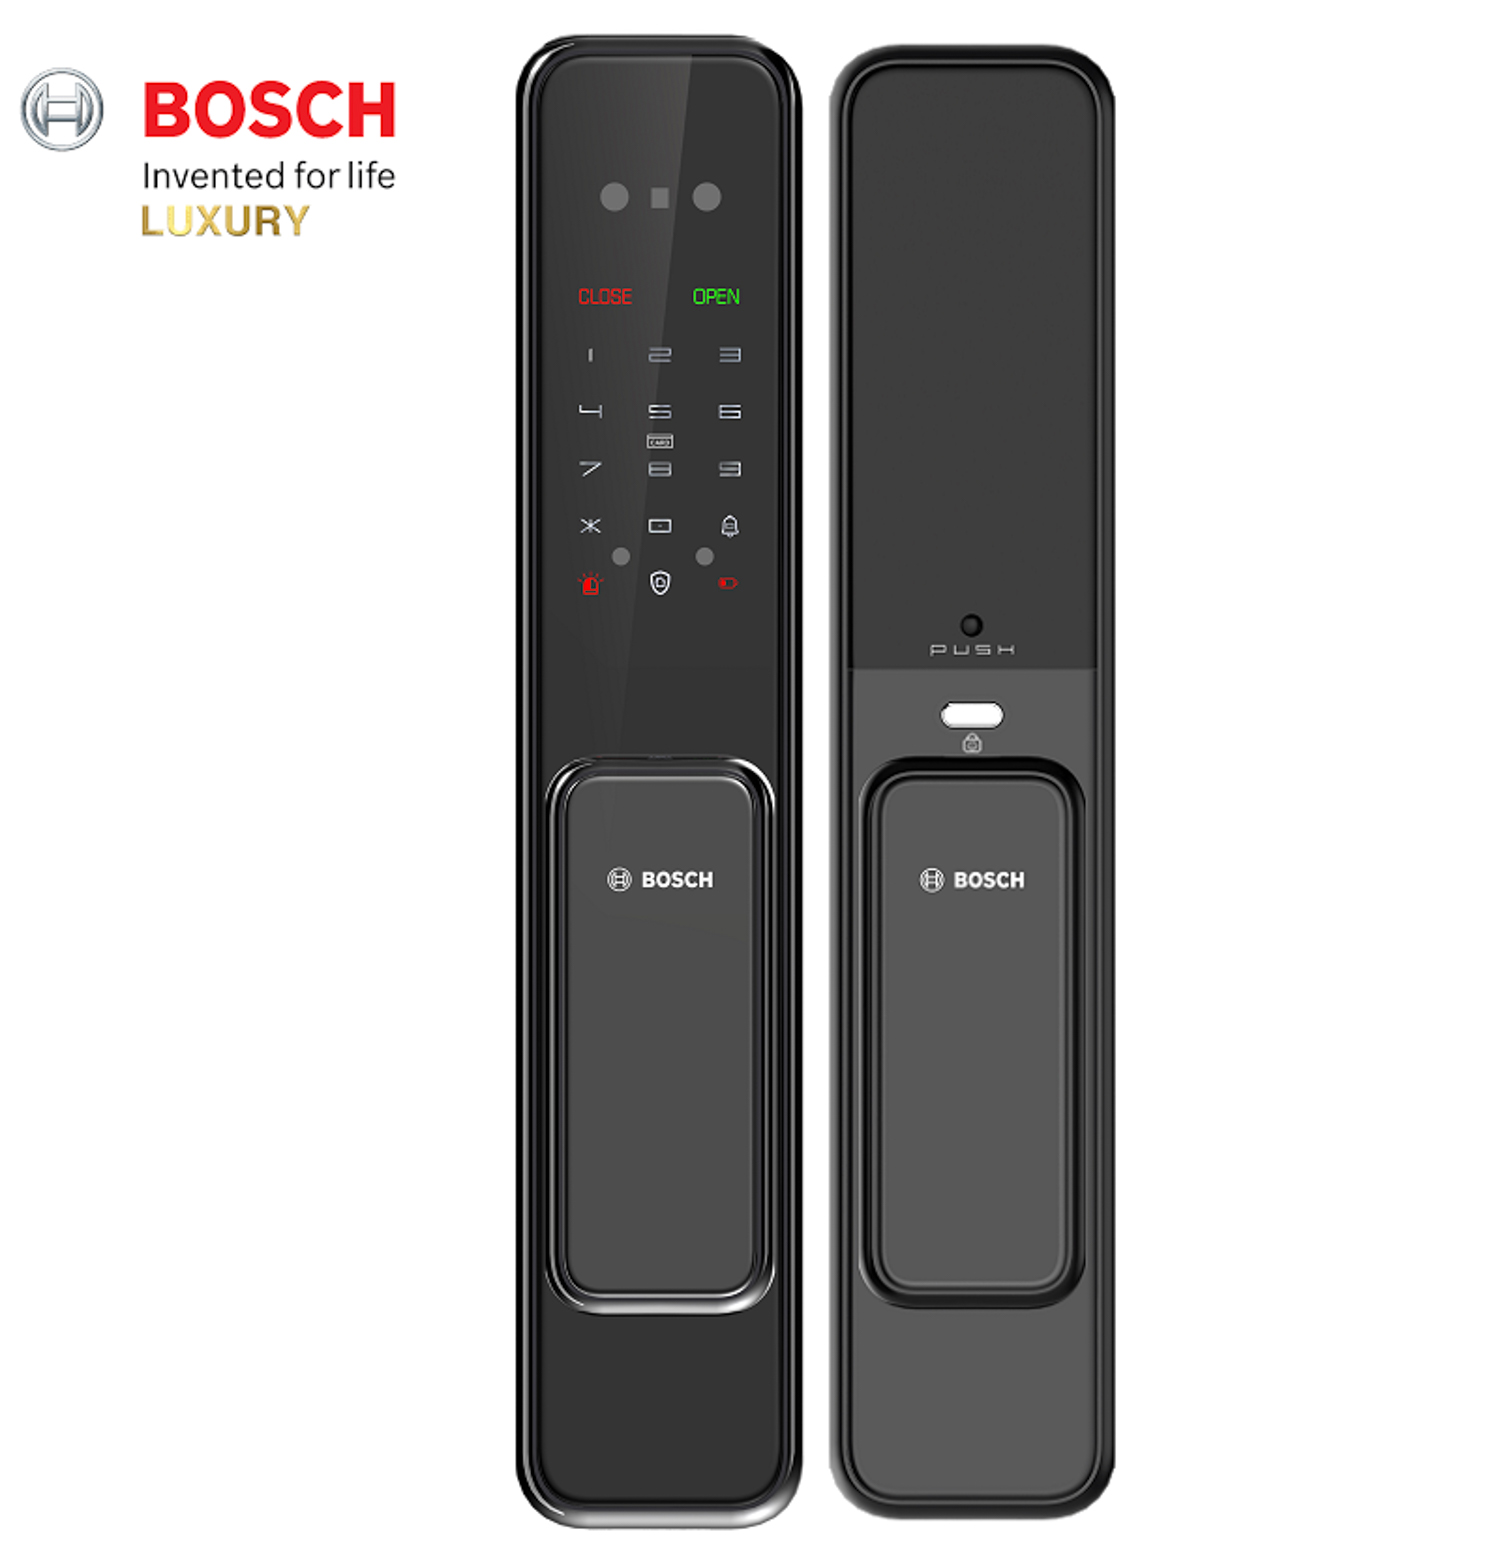 Khóa điện tử Bosch GD.EL600B EU B tích hợp nhiều tính năng hiện đại